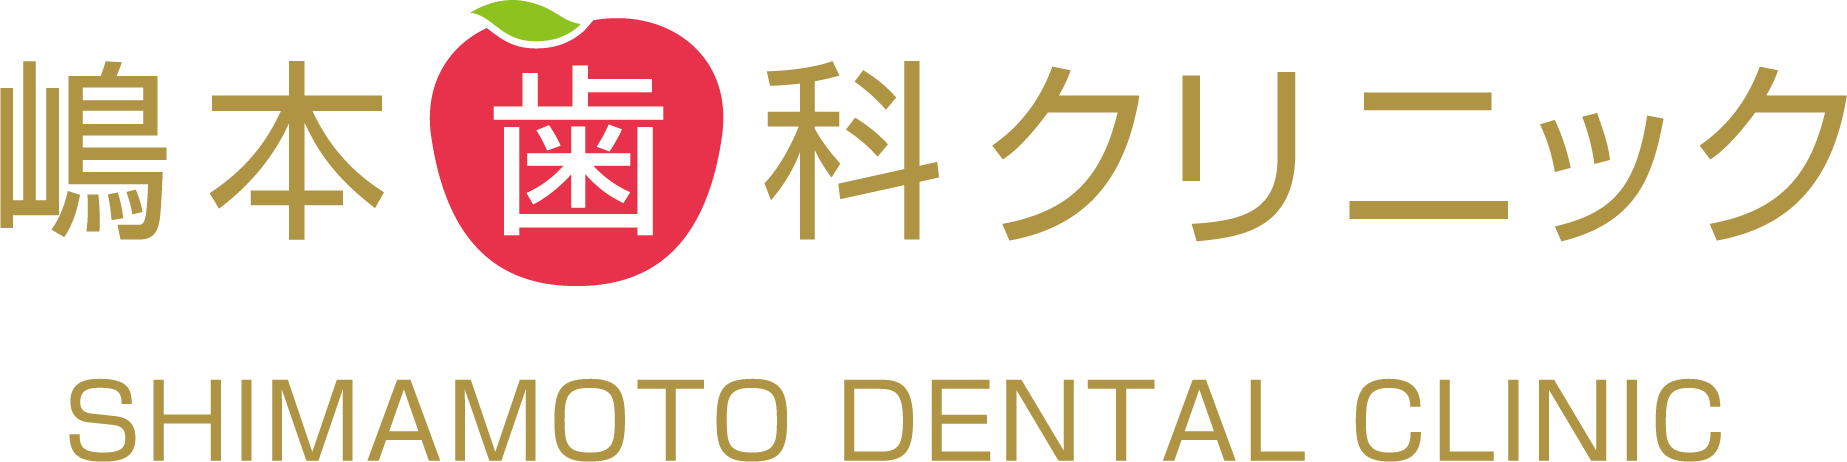 嶋本歯科クリニック - ブログ